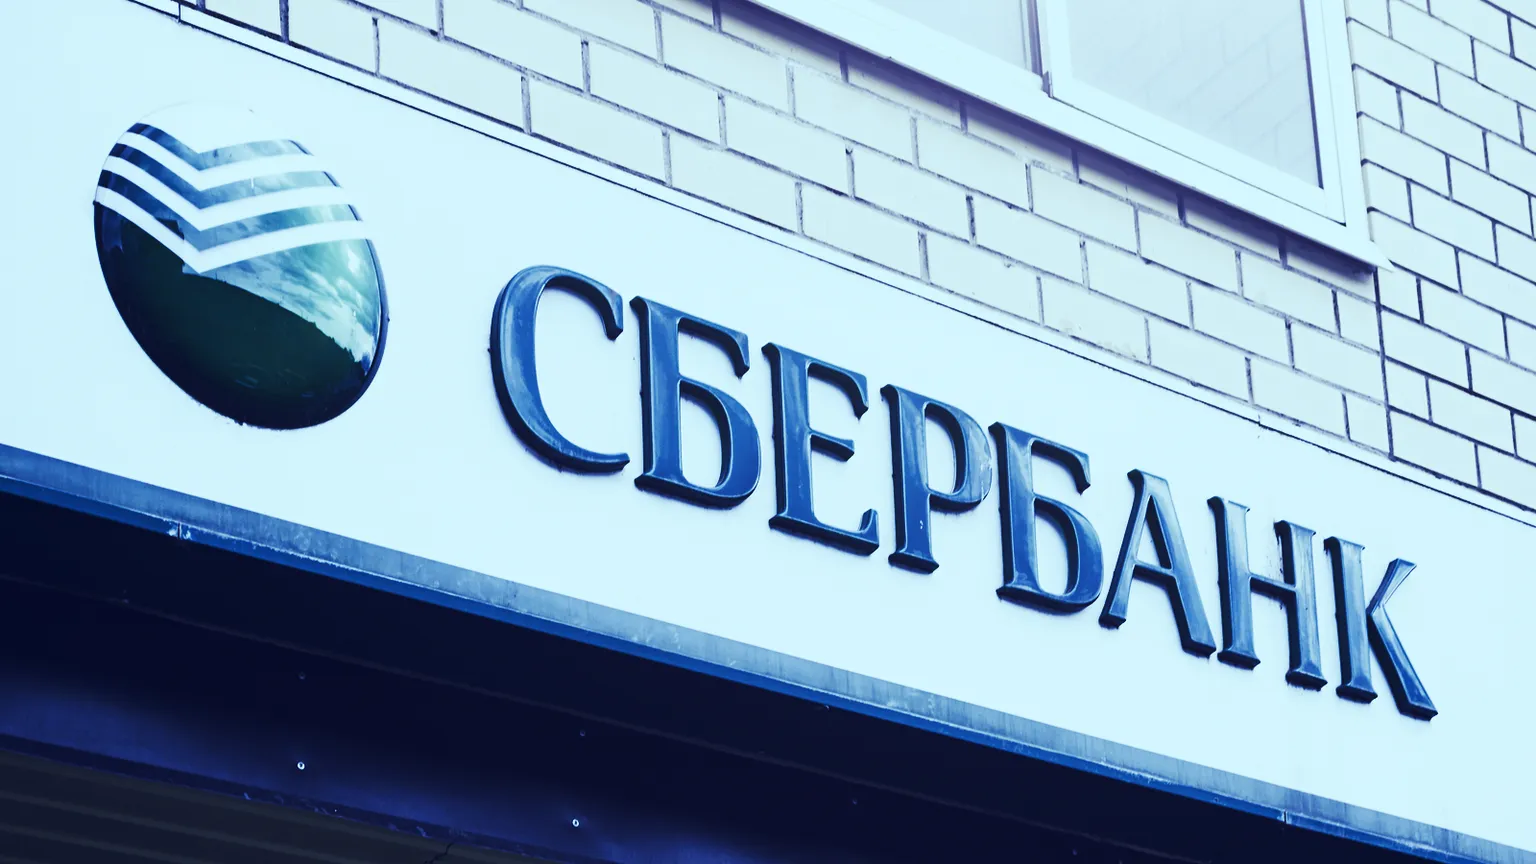 Logotipo del Sberbank, el banco más grande de Rusia. Imagen: Shutterstock